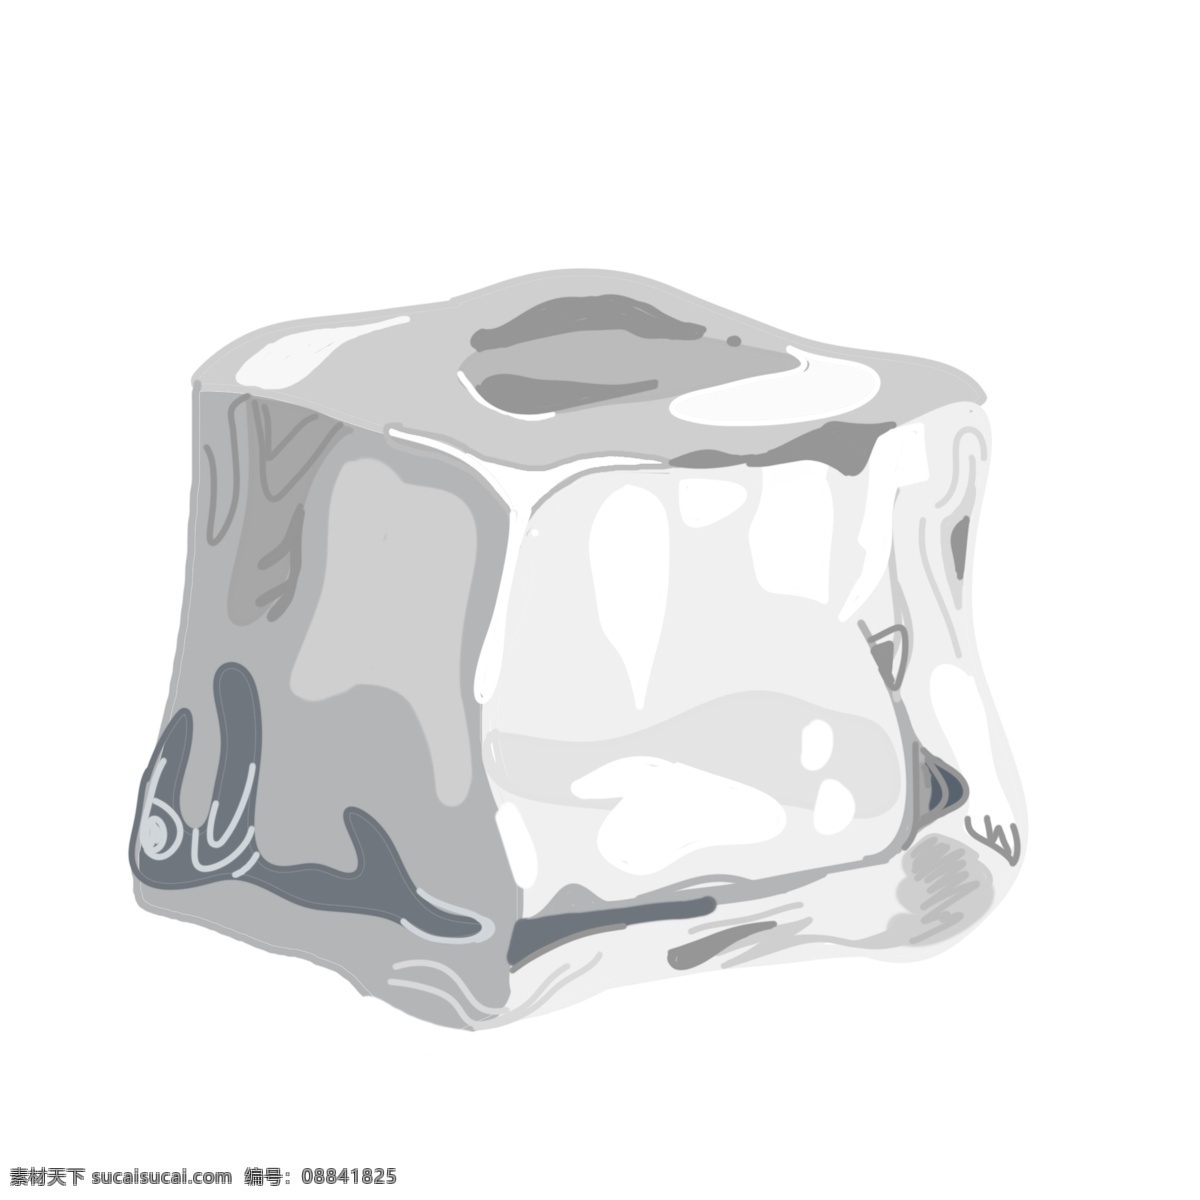 白色 冰块 装饰 插画 白色的冰块 创意冰块 立体冰块 卡通冰块 冰块装饰 冰块插画 夏日的冰块